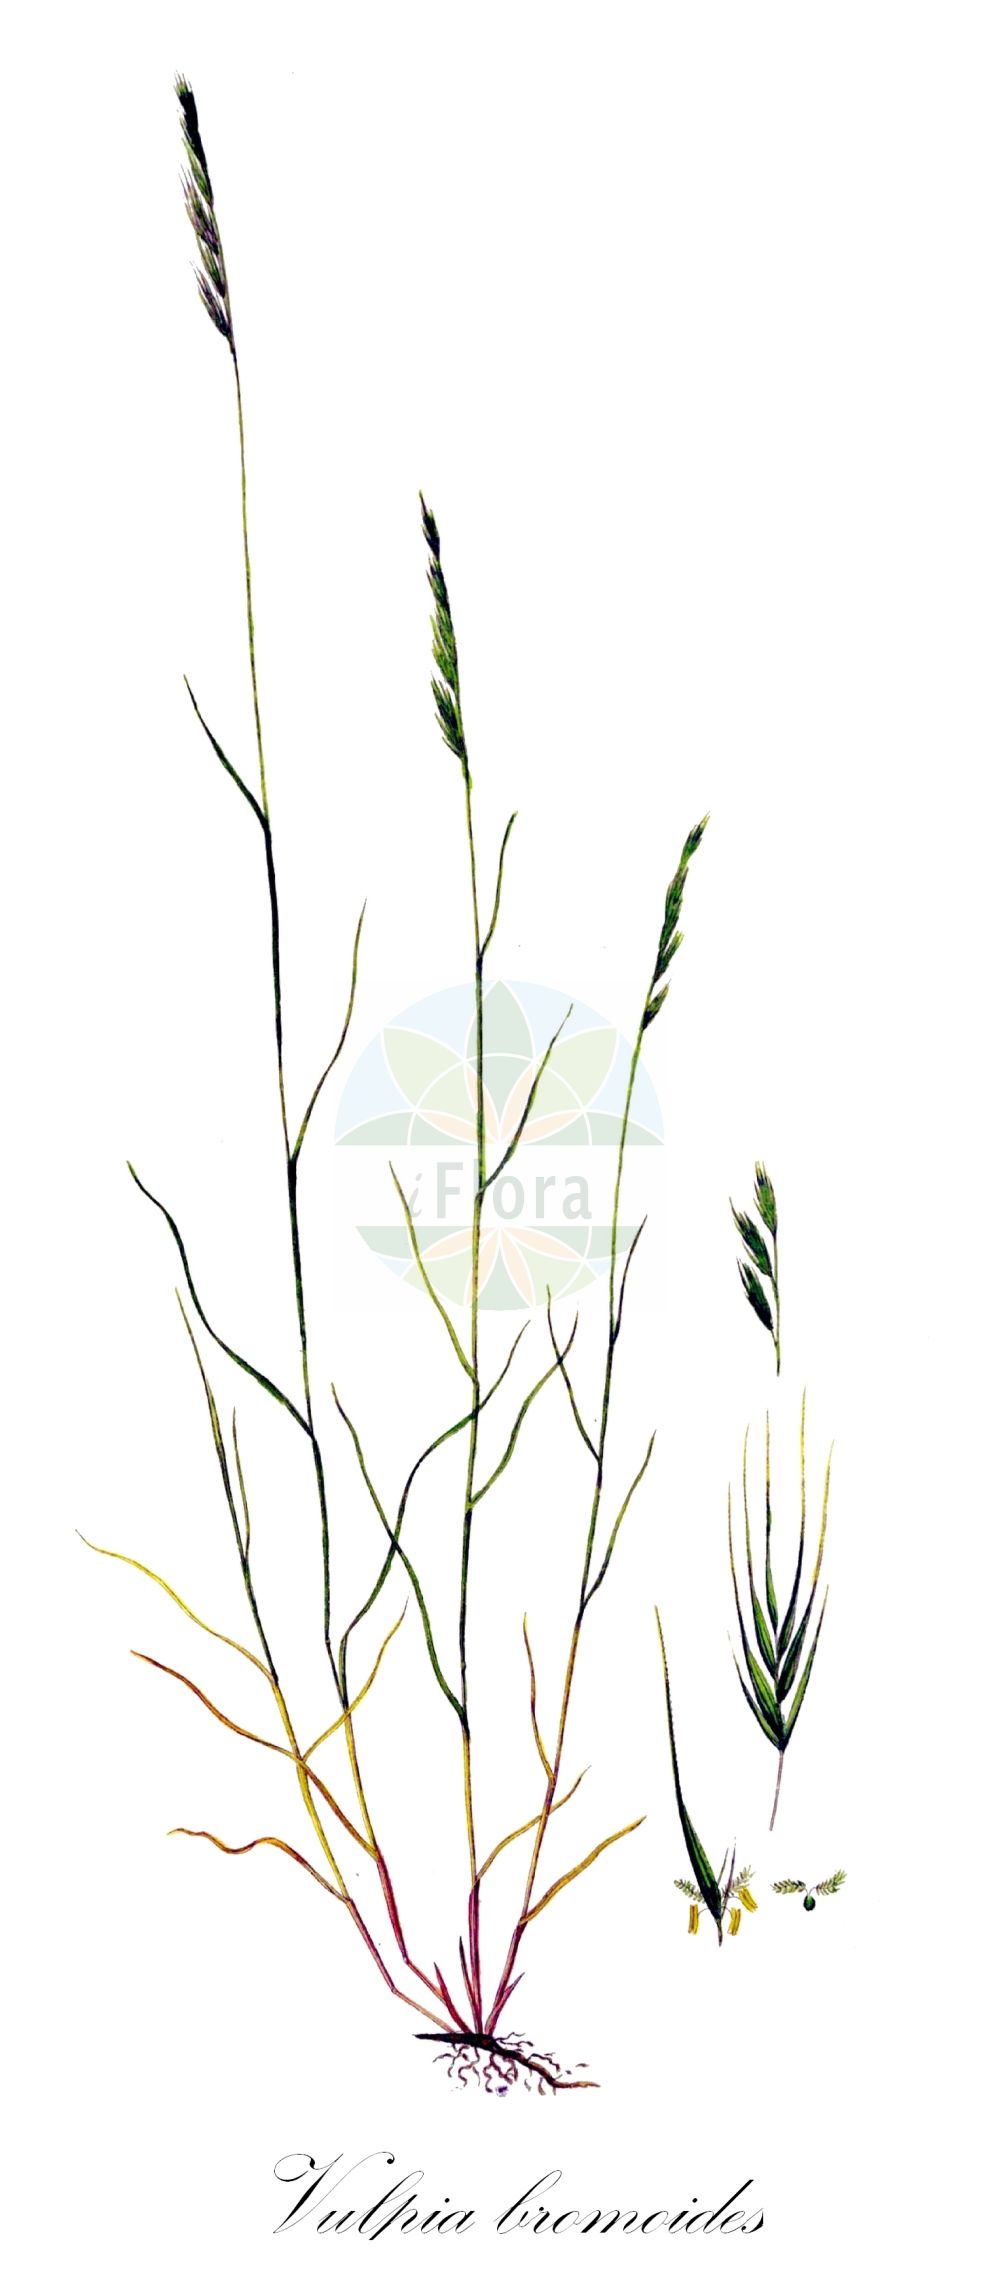 Historische Abbildung von Vulpia bromoides (Trespen-Federschwingel - Squirreltail Fescue). Das Bild zeigt Blatt, Bluete, Frucht und Same. ---- Historical Drawing of Vulpia bromoides (Trespen-Federschwingel - Squirreltail Fescue). The image is showing leaf, flower, fruit and seed.(Vulpia bromoides,Trespen-Federschwingel,Squirreltail Fescue,Bromus dertonensis,Festuca brachypoda,Festuca bromoides,Festuca dertonensis,Festuca sciuroides,Vulpia bromoides,Vulpia dertonensis,Vulpia sciuroides,Trespen-Federschwingel,Eichhornschwanz-Federschwingel,Squirreltail Fescue,Barren Fescue,Brome Fescue,Silver Grass,Vulpia Hairgrass,Vulpia,Federschwingel,Fescue,Poaceae,Süßgräser,Grass family,Blatt,Bluete,Frucht,Same,leaf,flower,fruit,seed,Oeder (1761-1883))